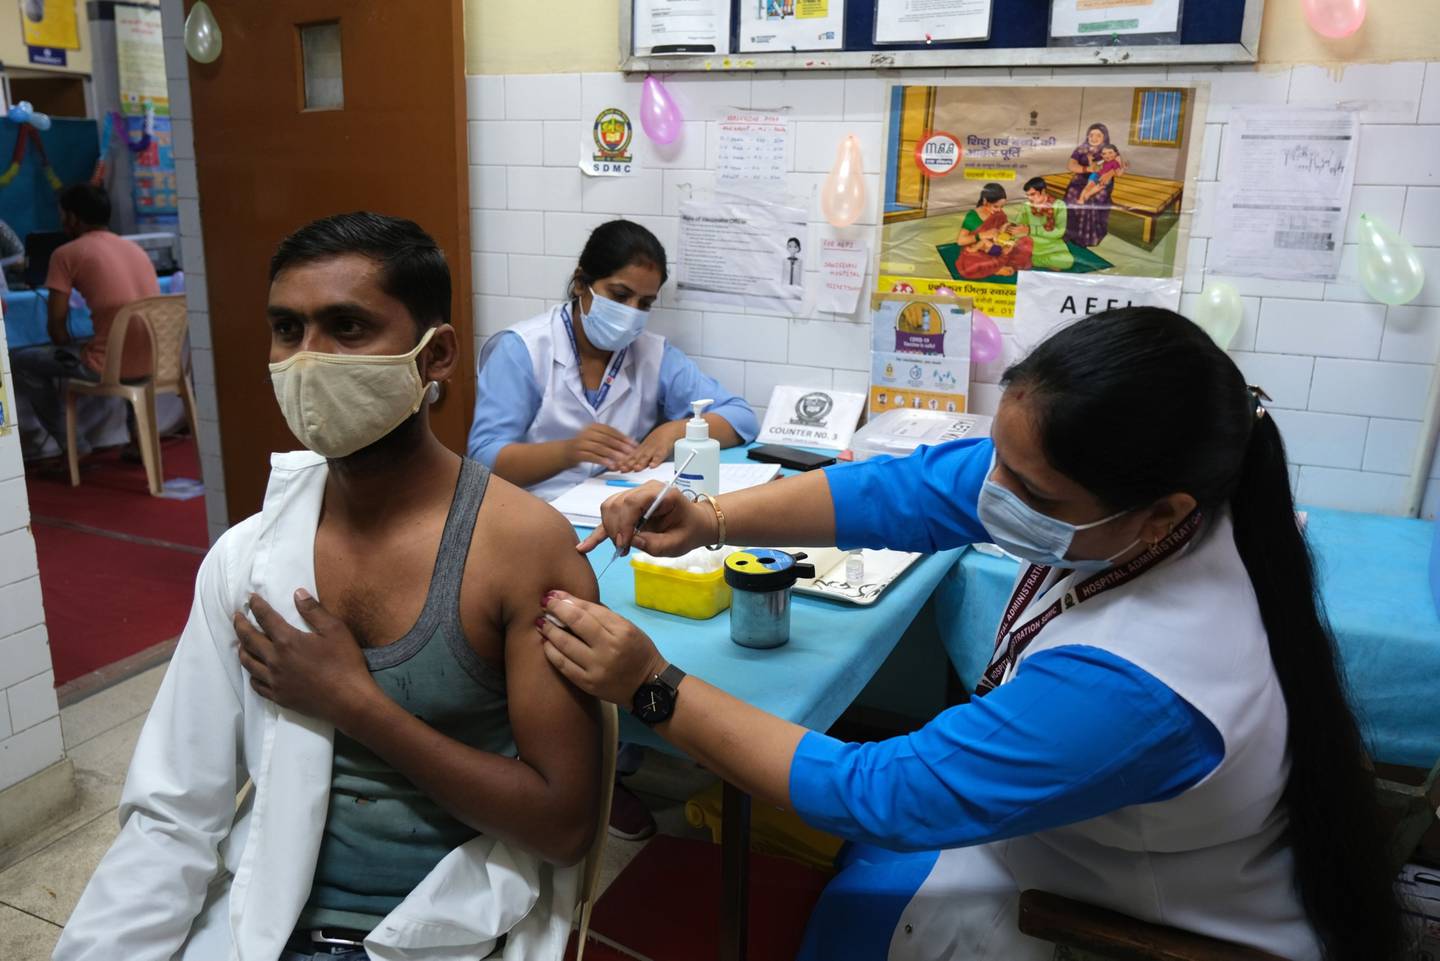 Un miembro del público recibe una dosis de la vacuna contra el Covid-19 Covaxin en un centro de vacunación instalado en un dispensario de salud del gobierno de Delhi en Nueva Delhi, India, el jueves 21 de octubre de 2021. La India alcanzó el hito de mil millones de vacunas contra el Covid-19 administradas, aunque su campaña de inoculación sigue enfrentándose a grandes retos.dfd